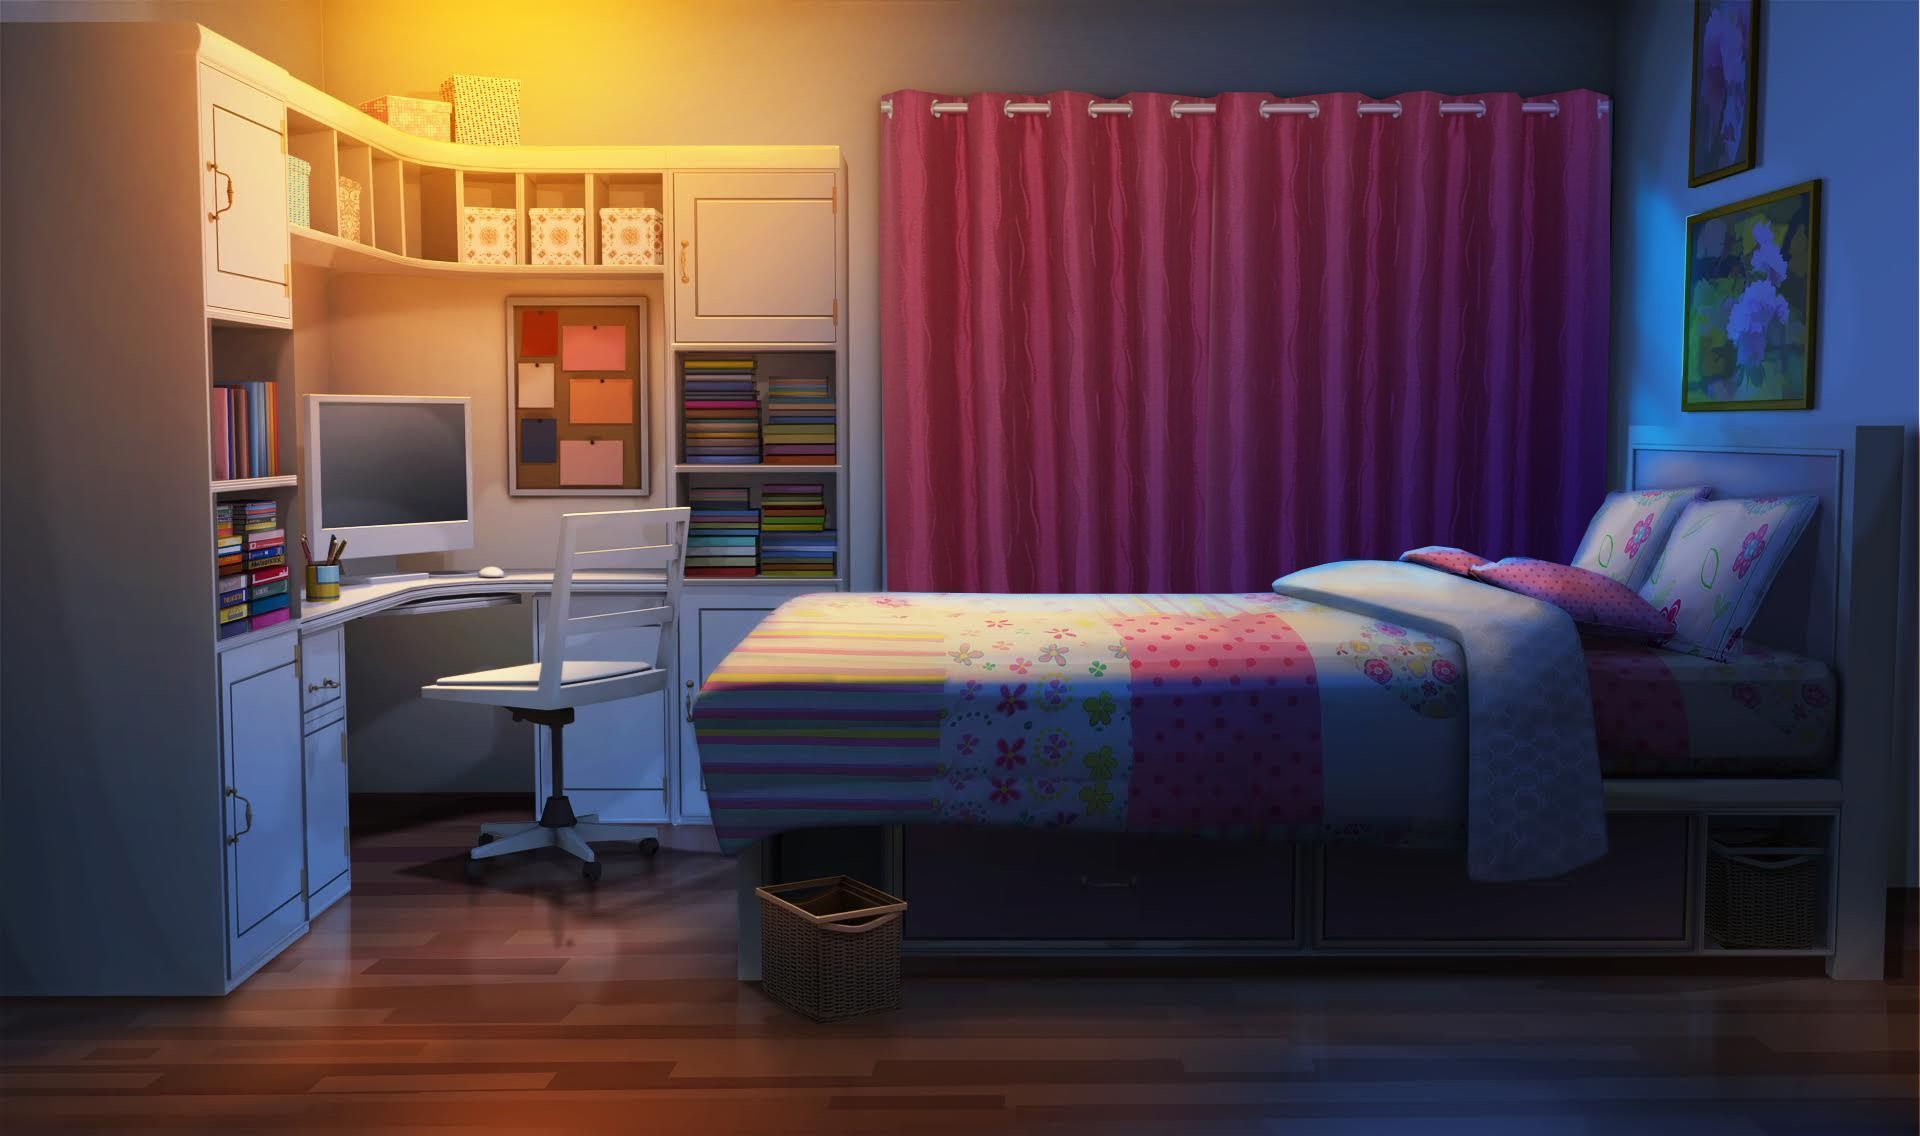 Cùng thử đổi không gian phòng của bạn với hình nền anime cho phòng tối để tận hưởng không khí mới mẻ và thú vị hơn. Bạn sẽ có cảm giác như đang bước vào thế giới của những nhân vật anime yêu thích của mình.